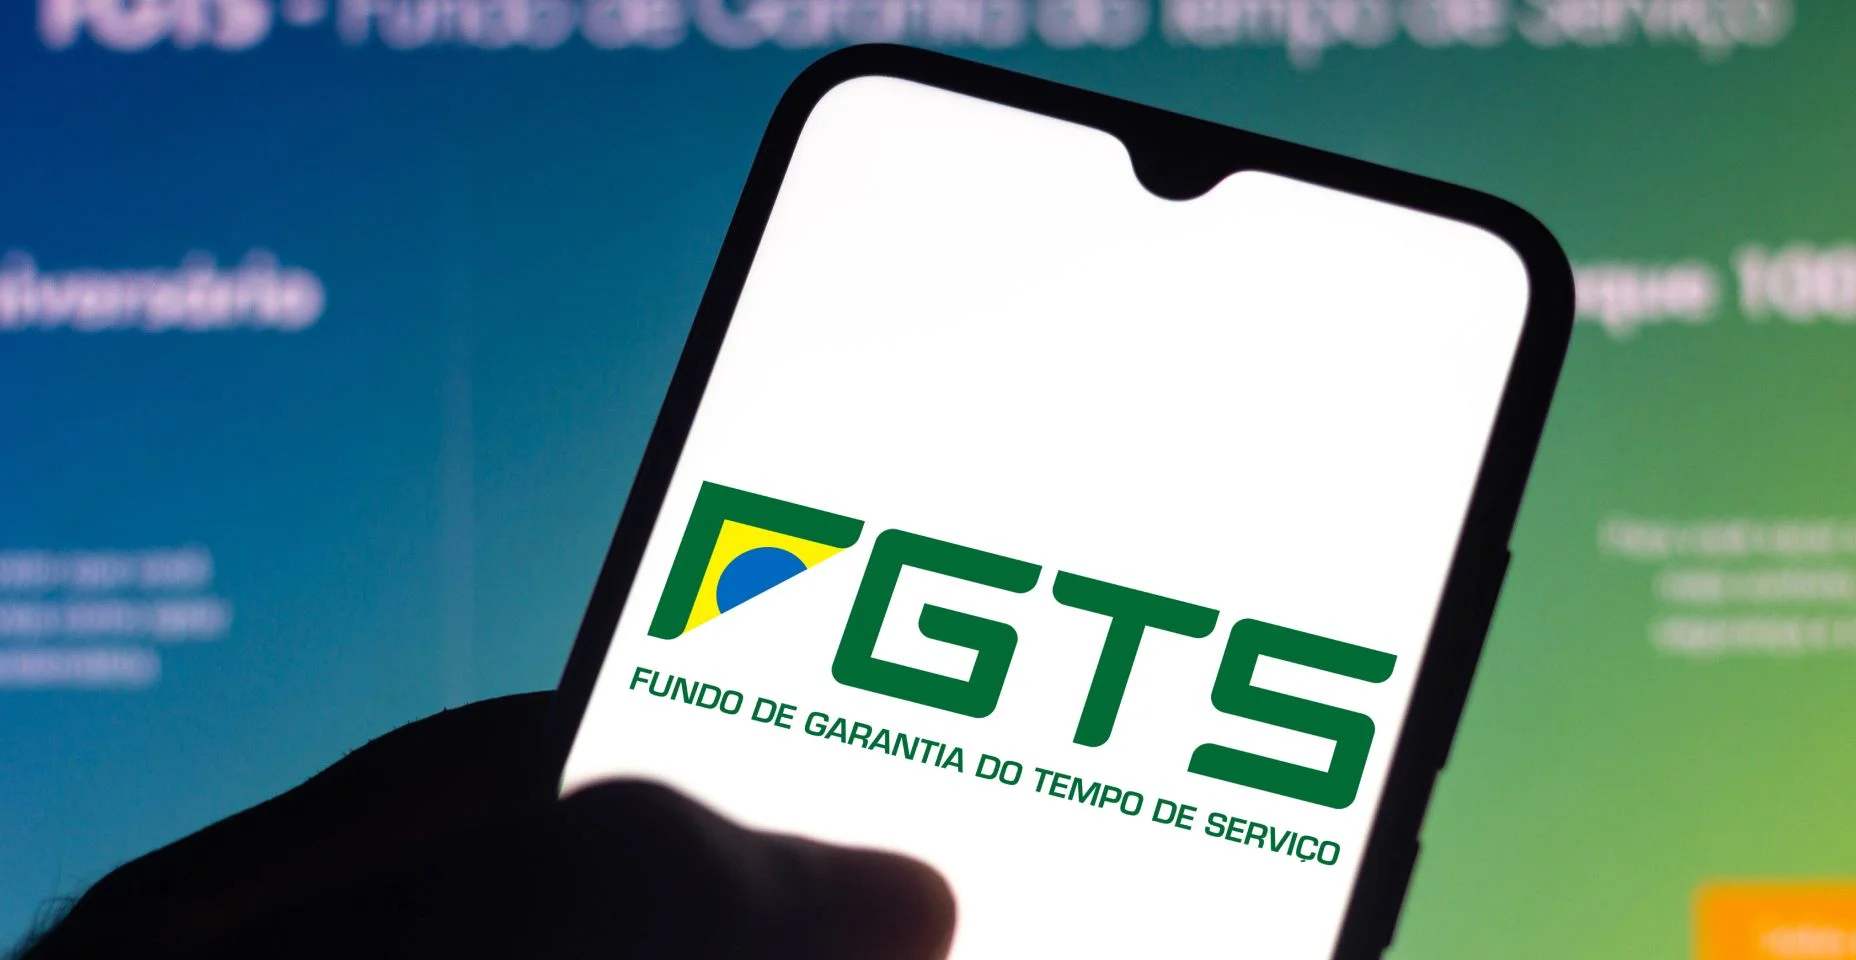 Nesta ilustração fotográfica o logotipo do Fundo de Garantia do Tempo de Serviço (FGTS) exibido na tela de um smartphone.